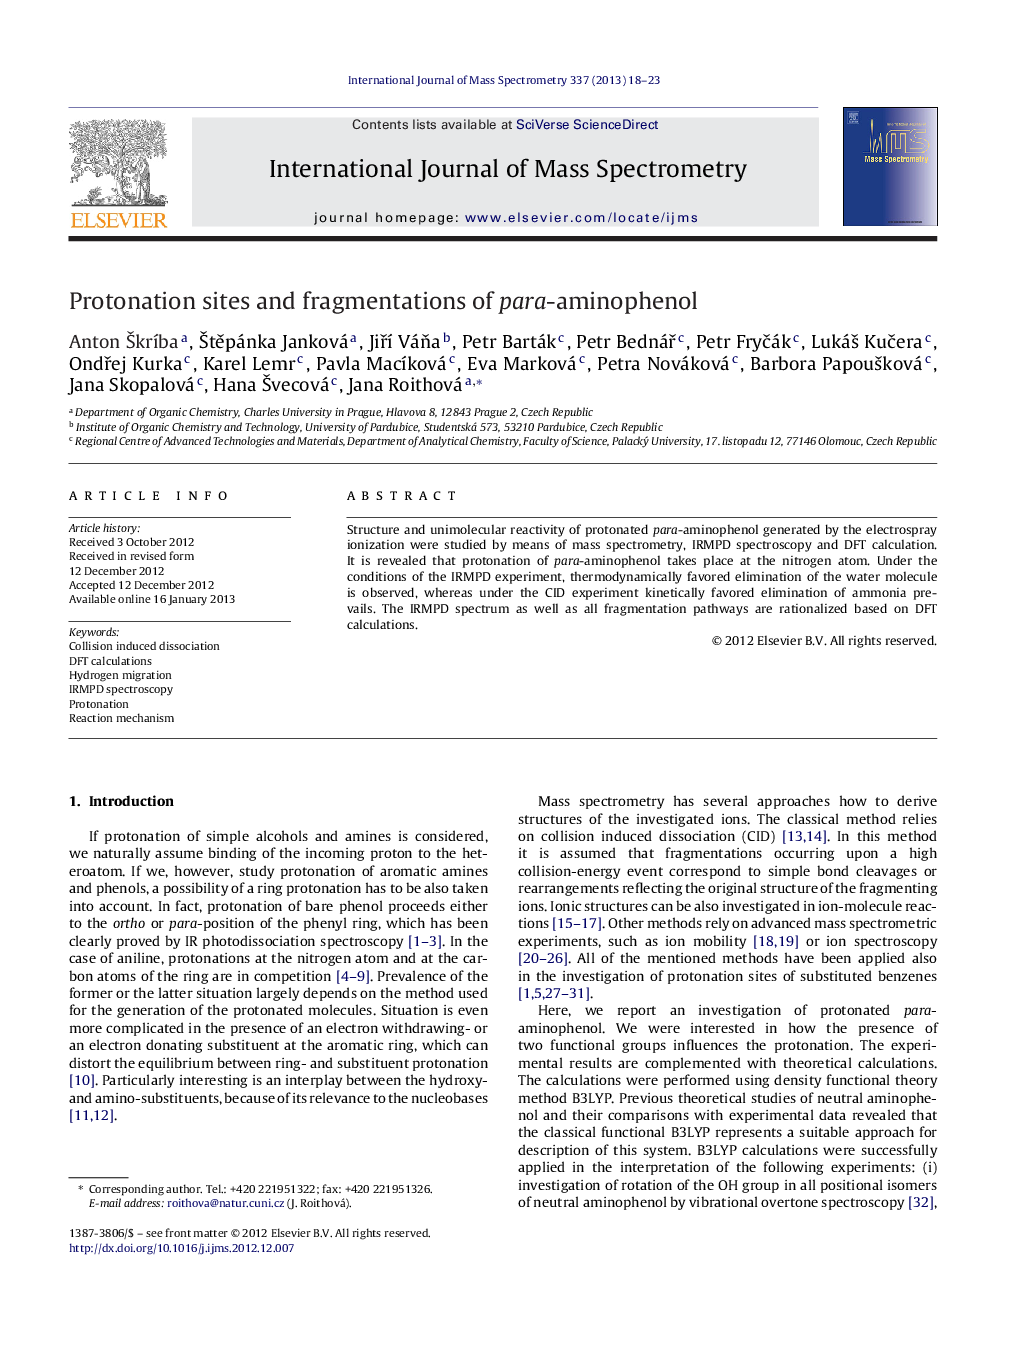 Protonation sites and fragmentations of para-aminophenol